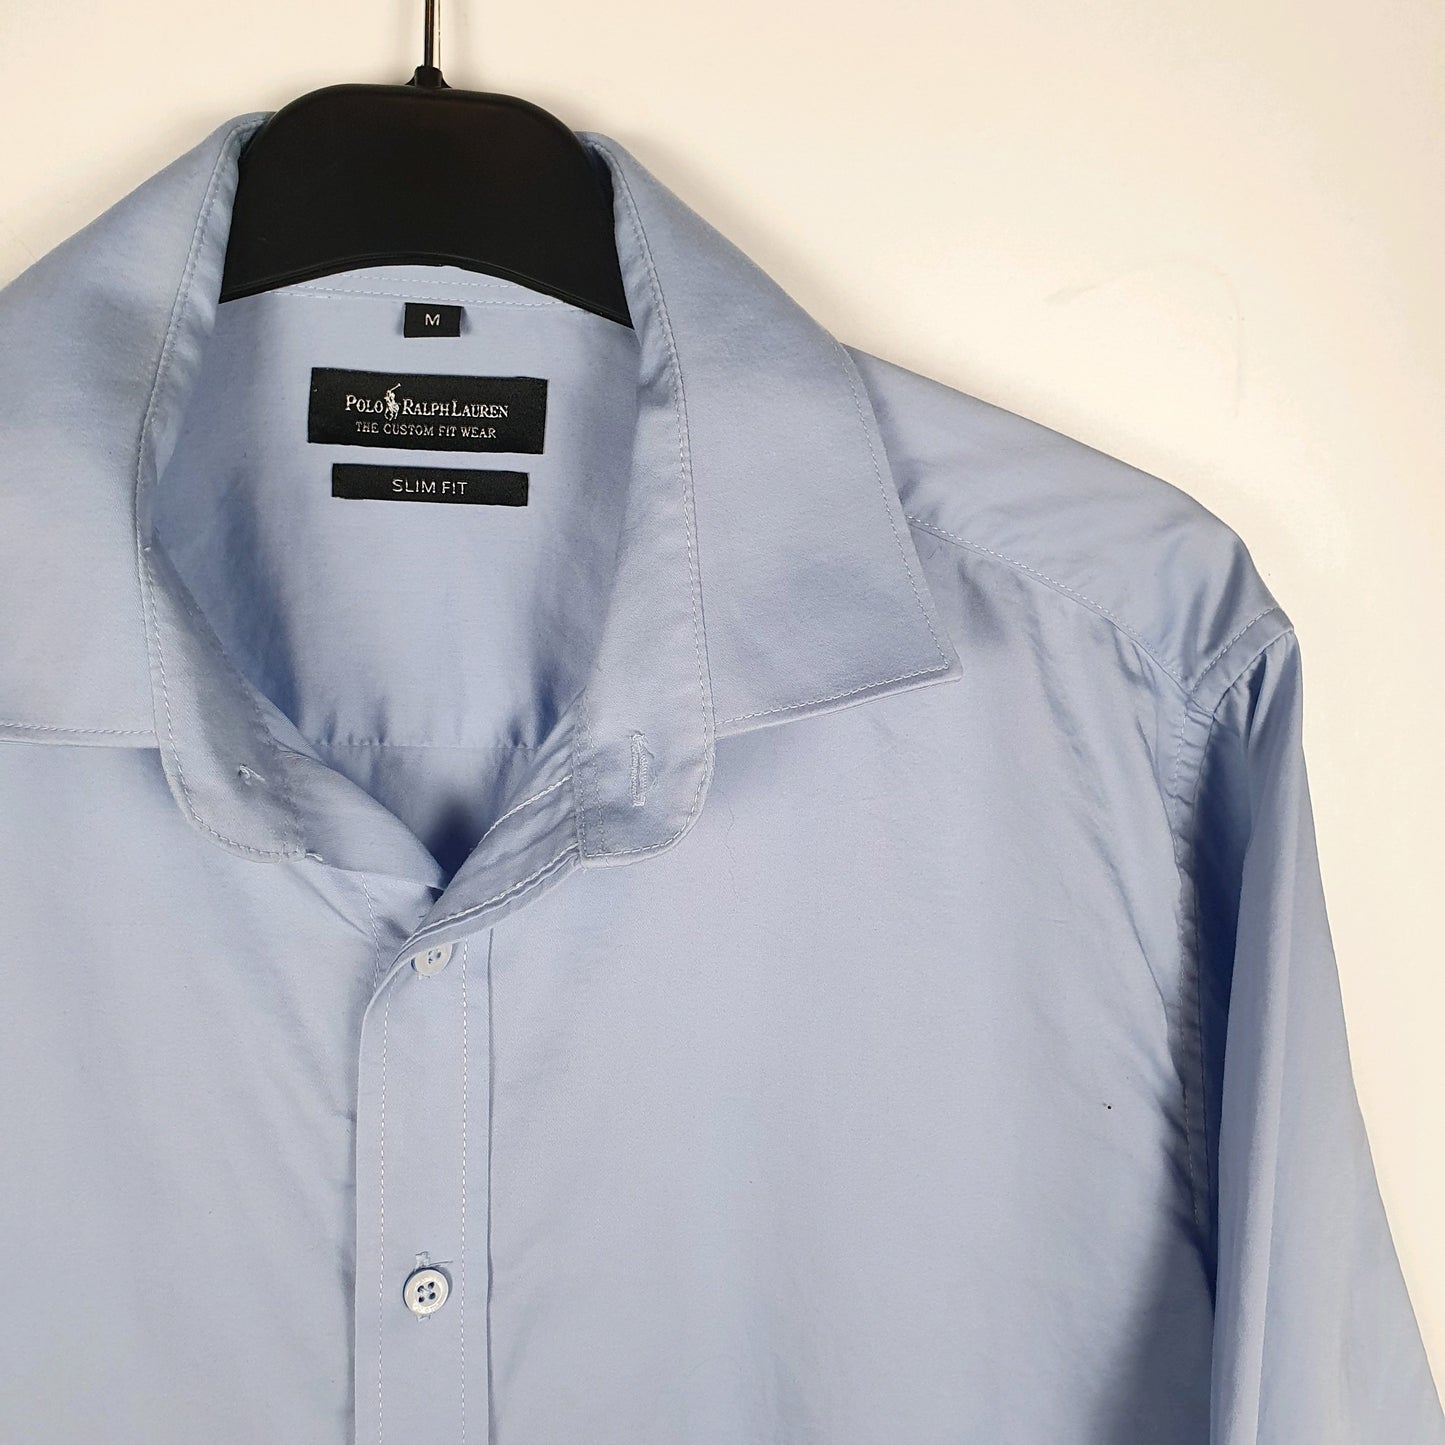 Polo Ralph Lauren Long Sleeve Slim Fit Shirt